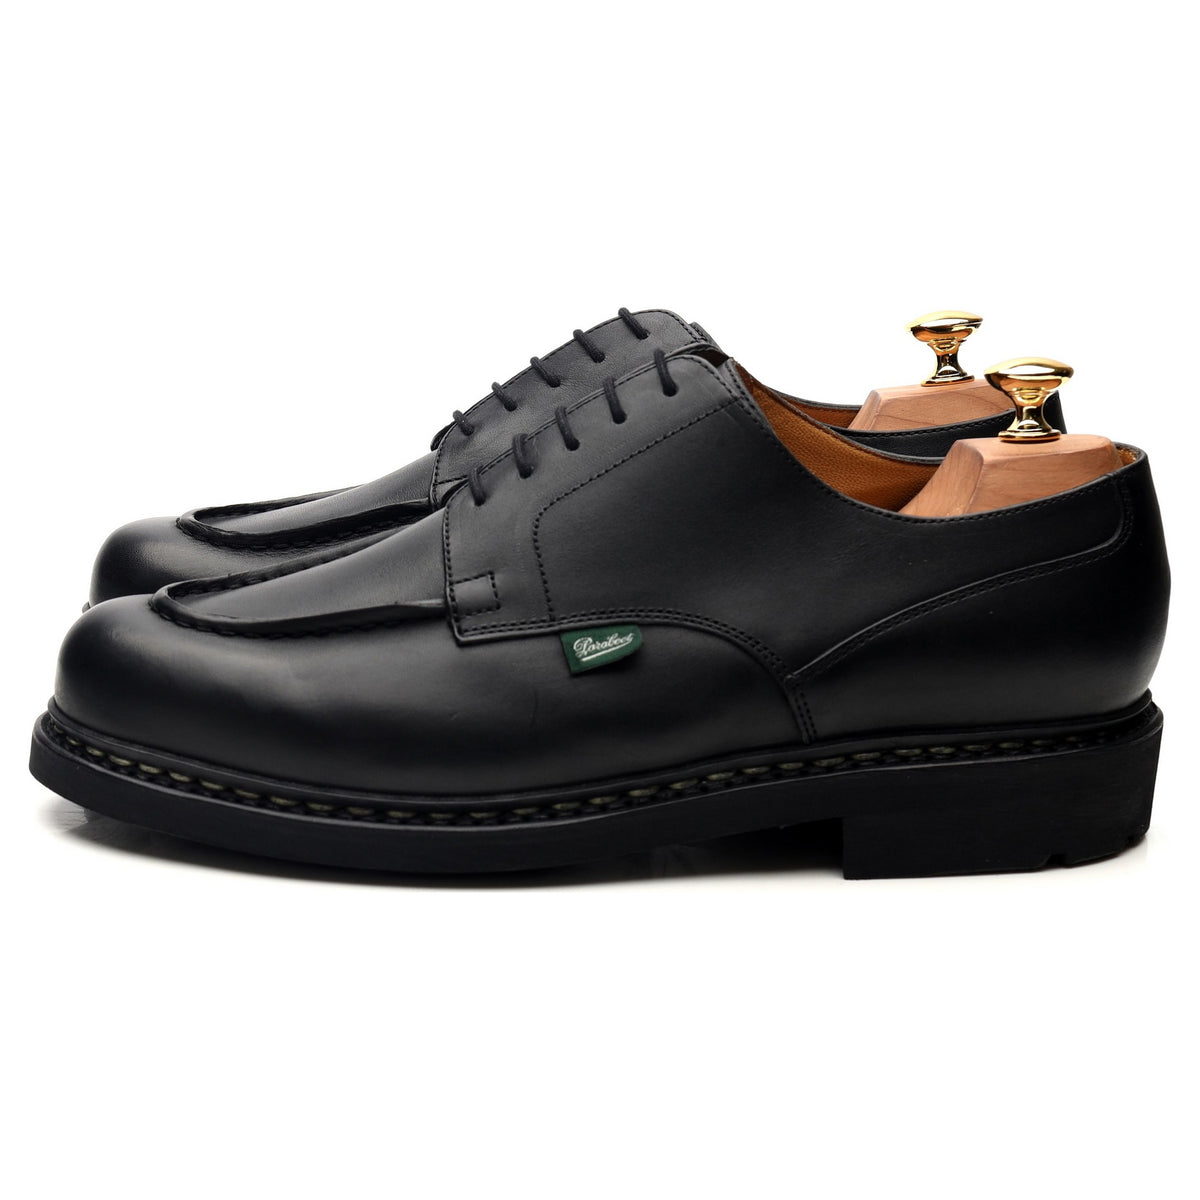 Chambord' Black Leather Derby UK 7 / UK 8 / UK 9 - Abbot's Shoes